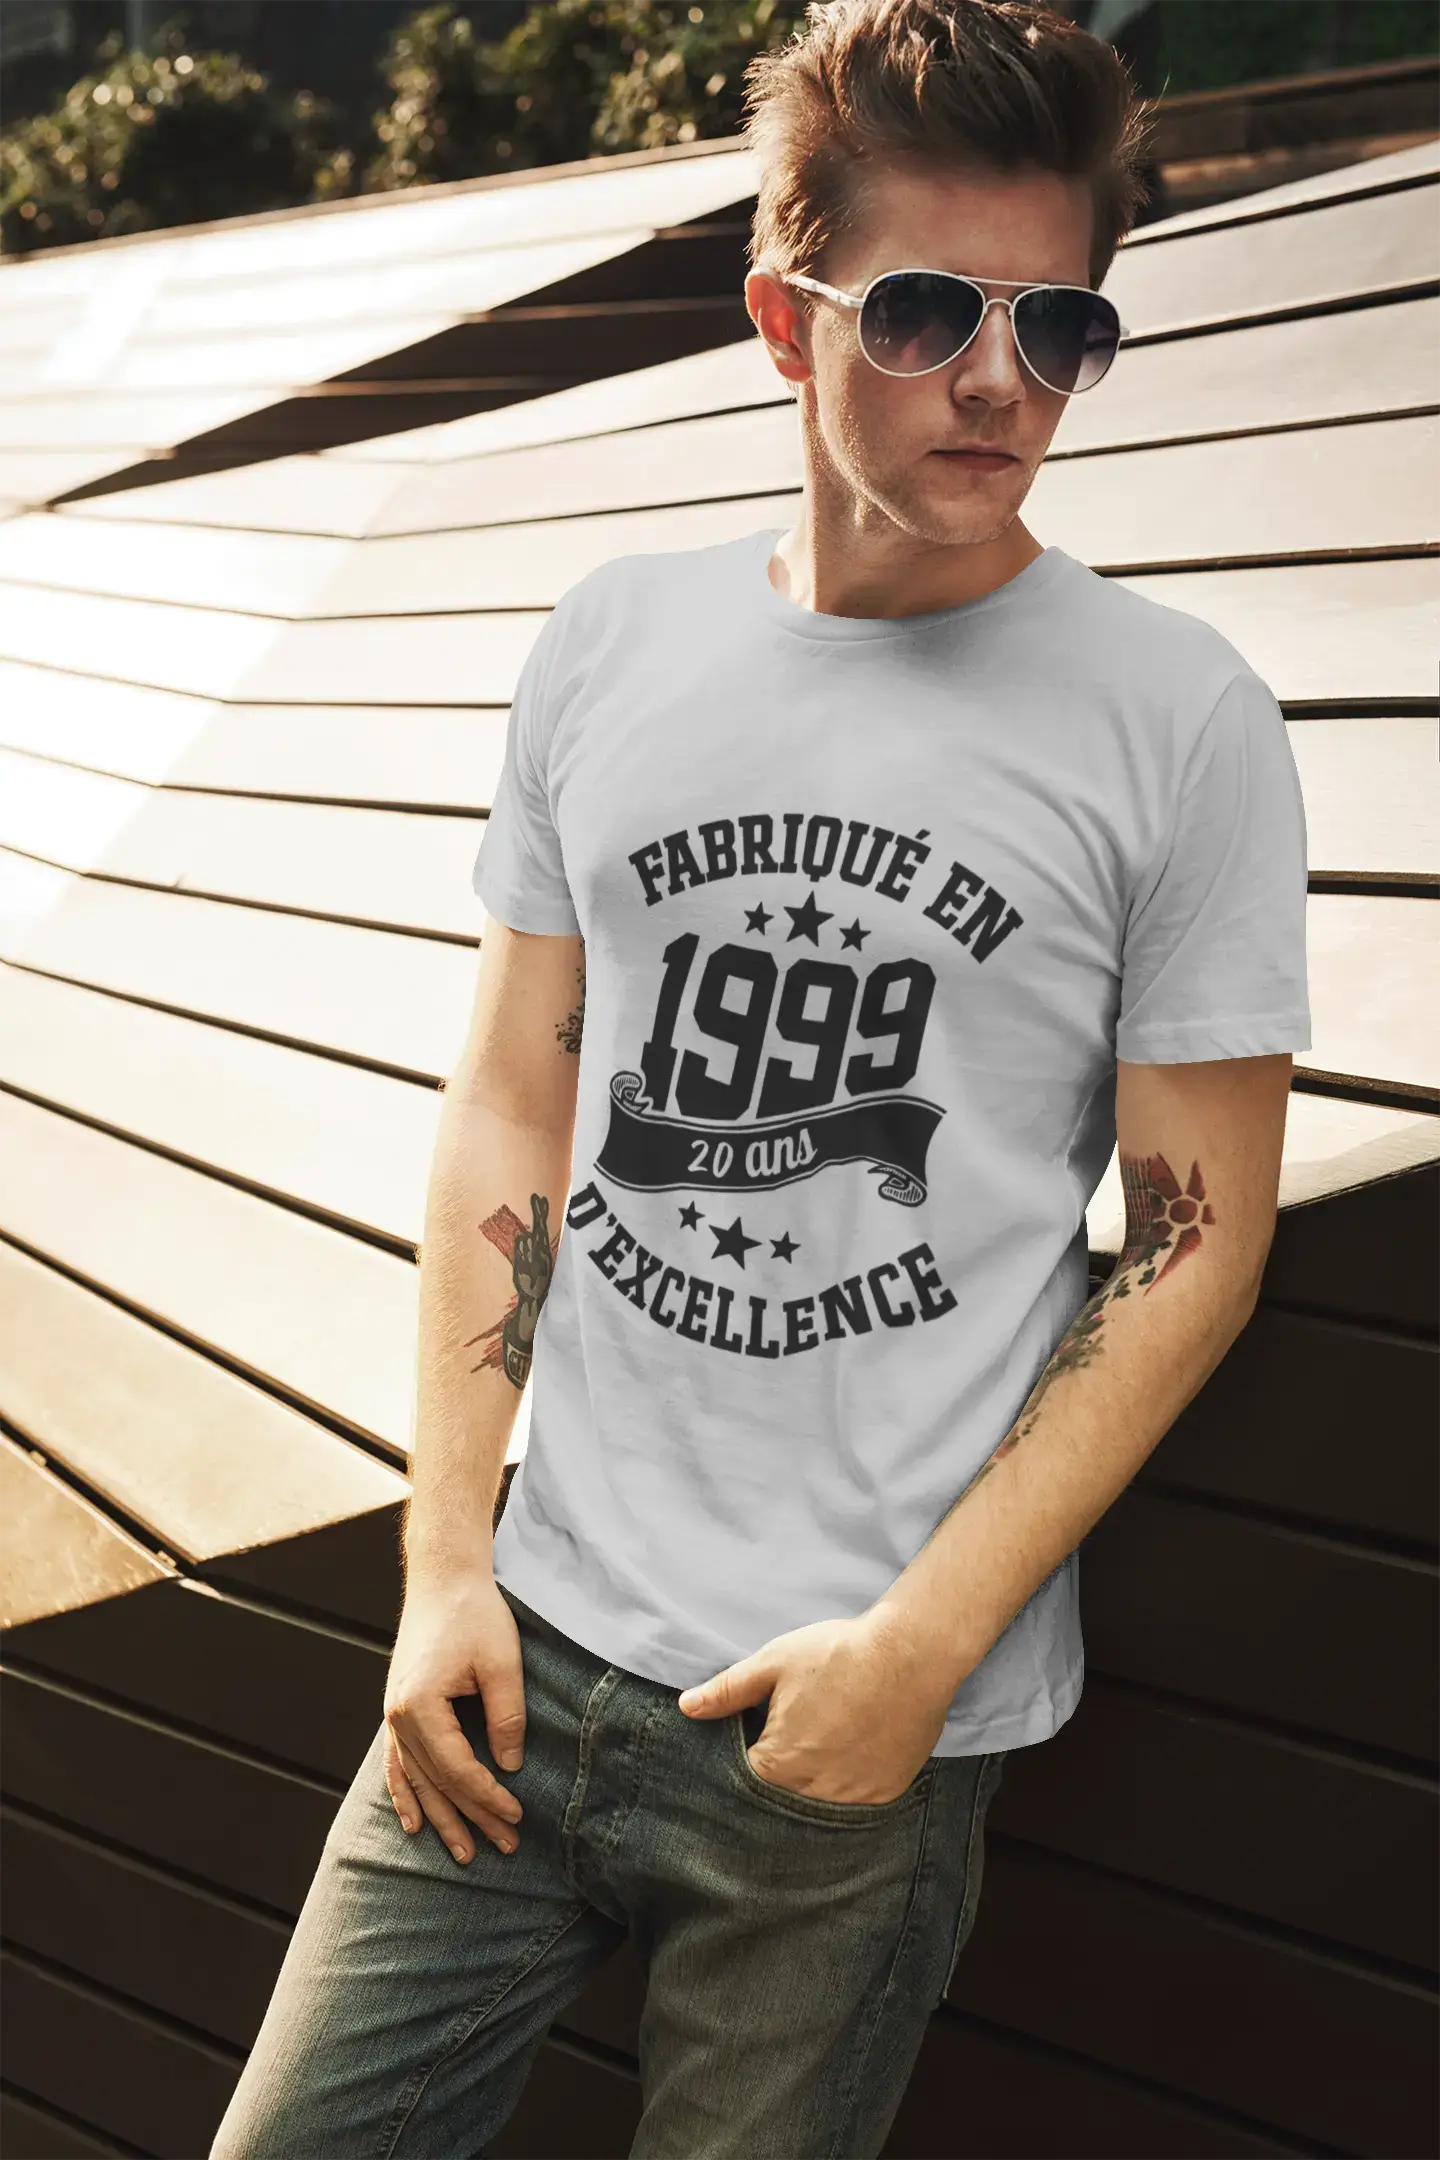 ULTRABASIC – Hergestellt im Jahr 1999, 20 Jahre alt. Original Unisex T-Shirt Marine